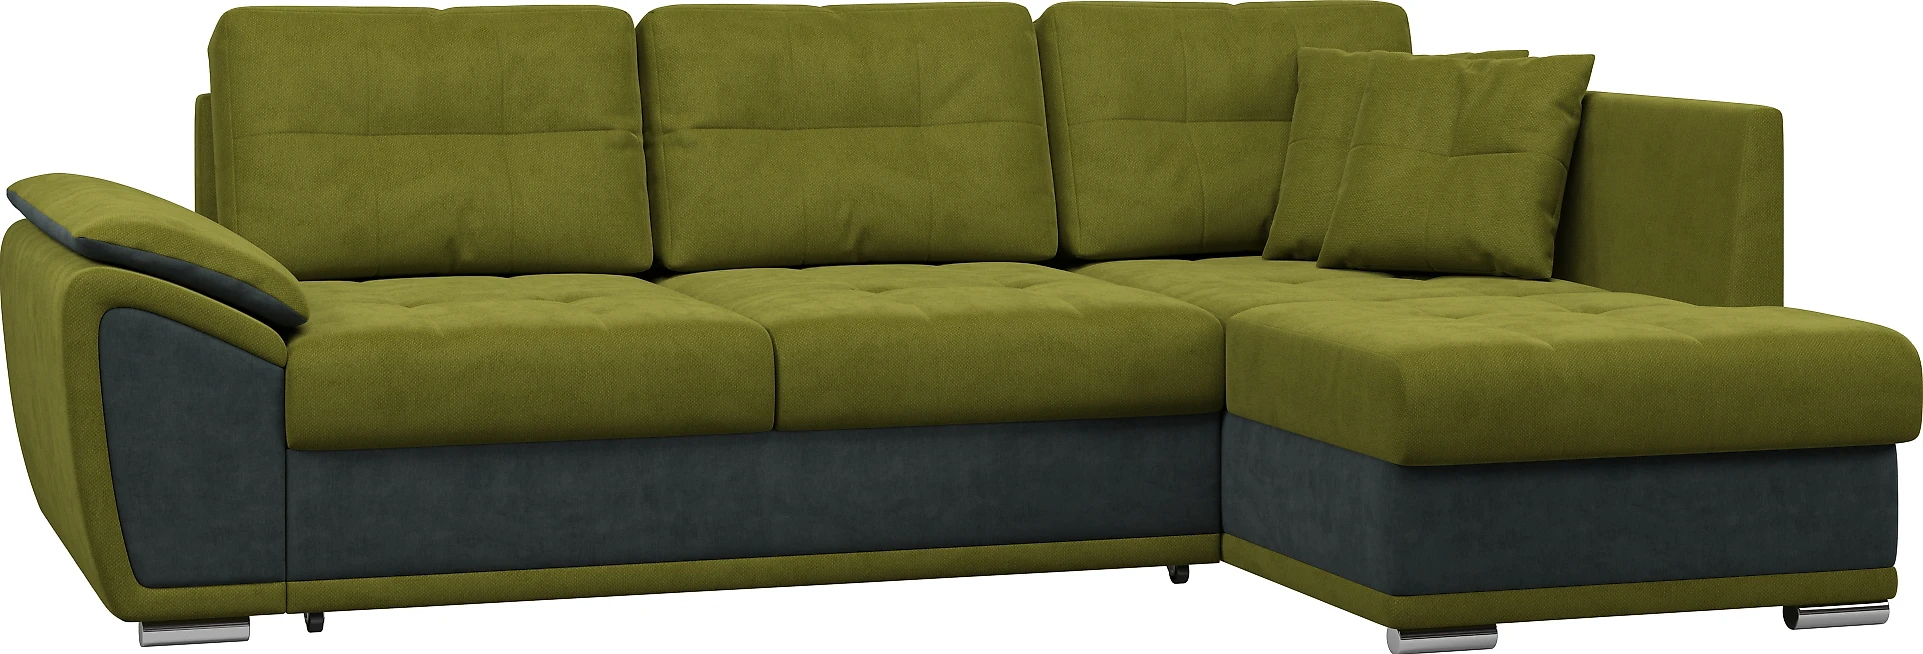 Угловой диван в классическом стиле Риттэр Плюш Верде